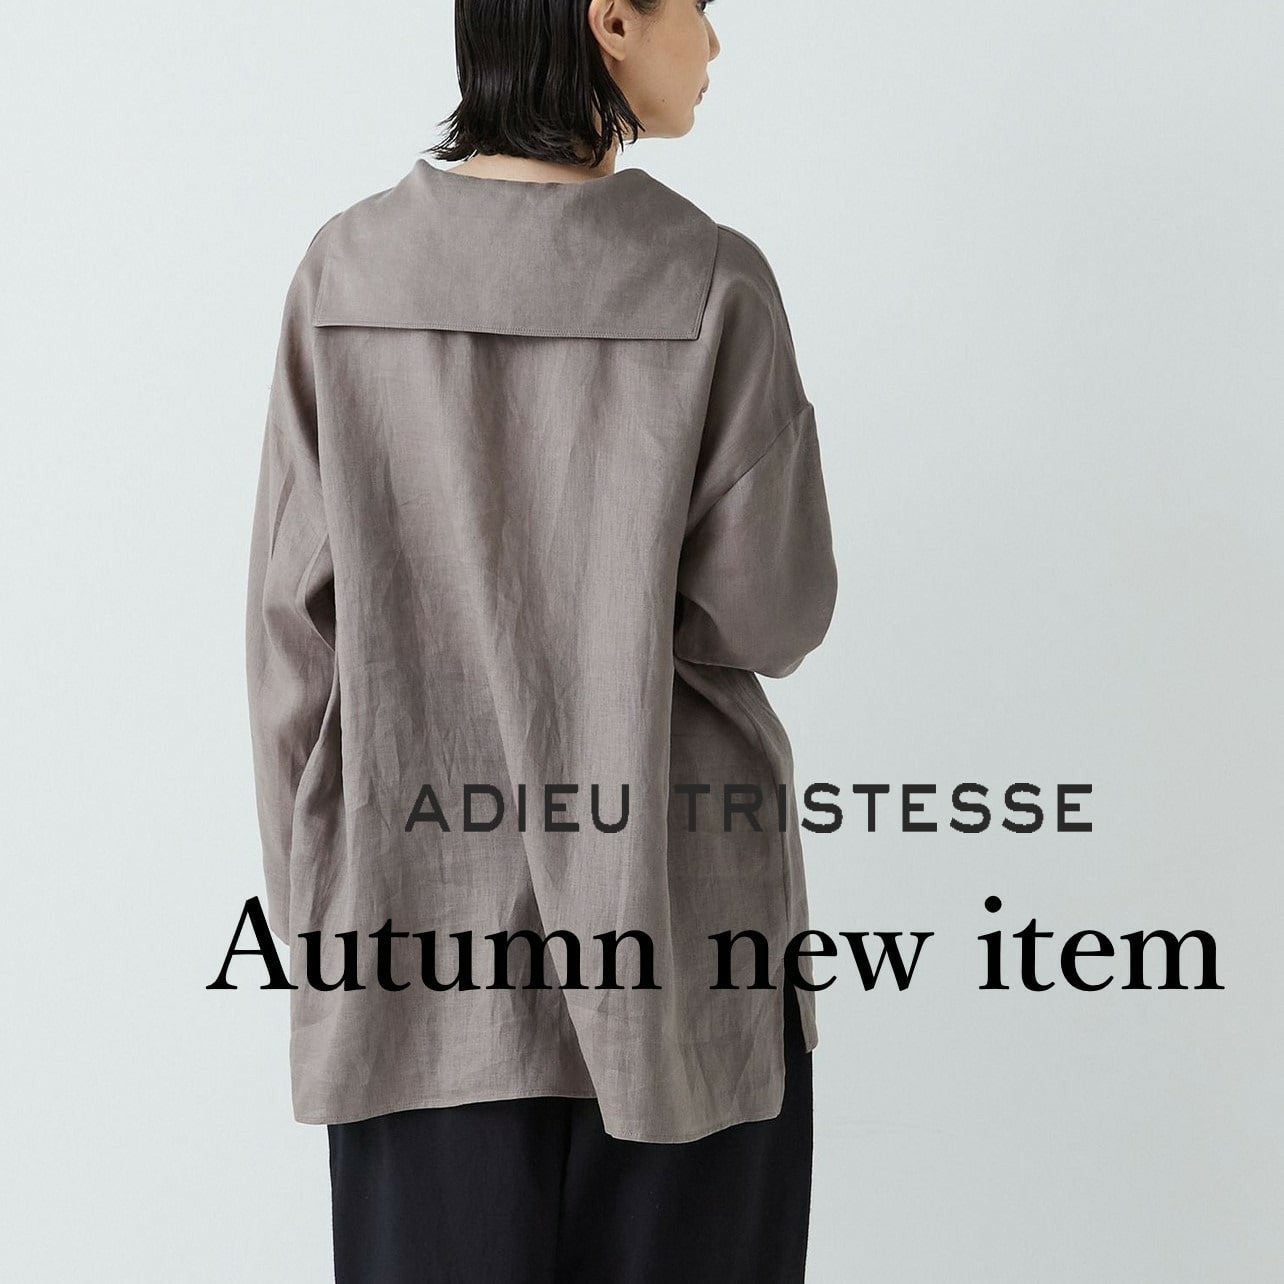 Autumn new item